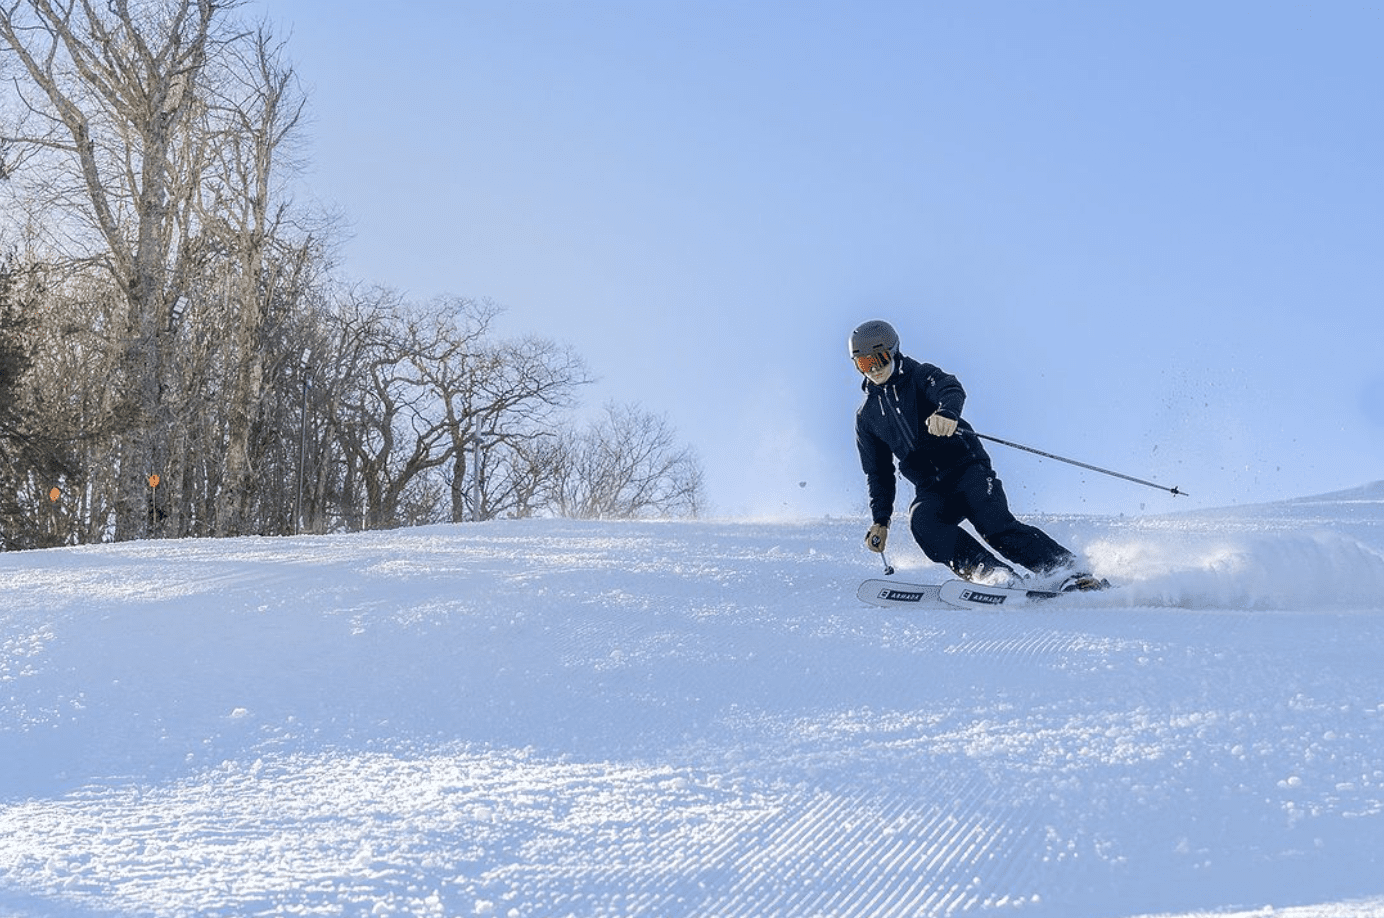 Asheville winter activities at Cataloochee Ski Area